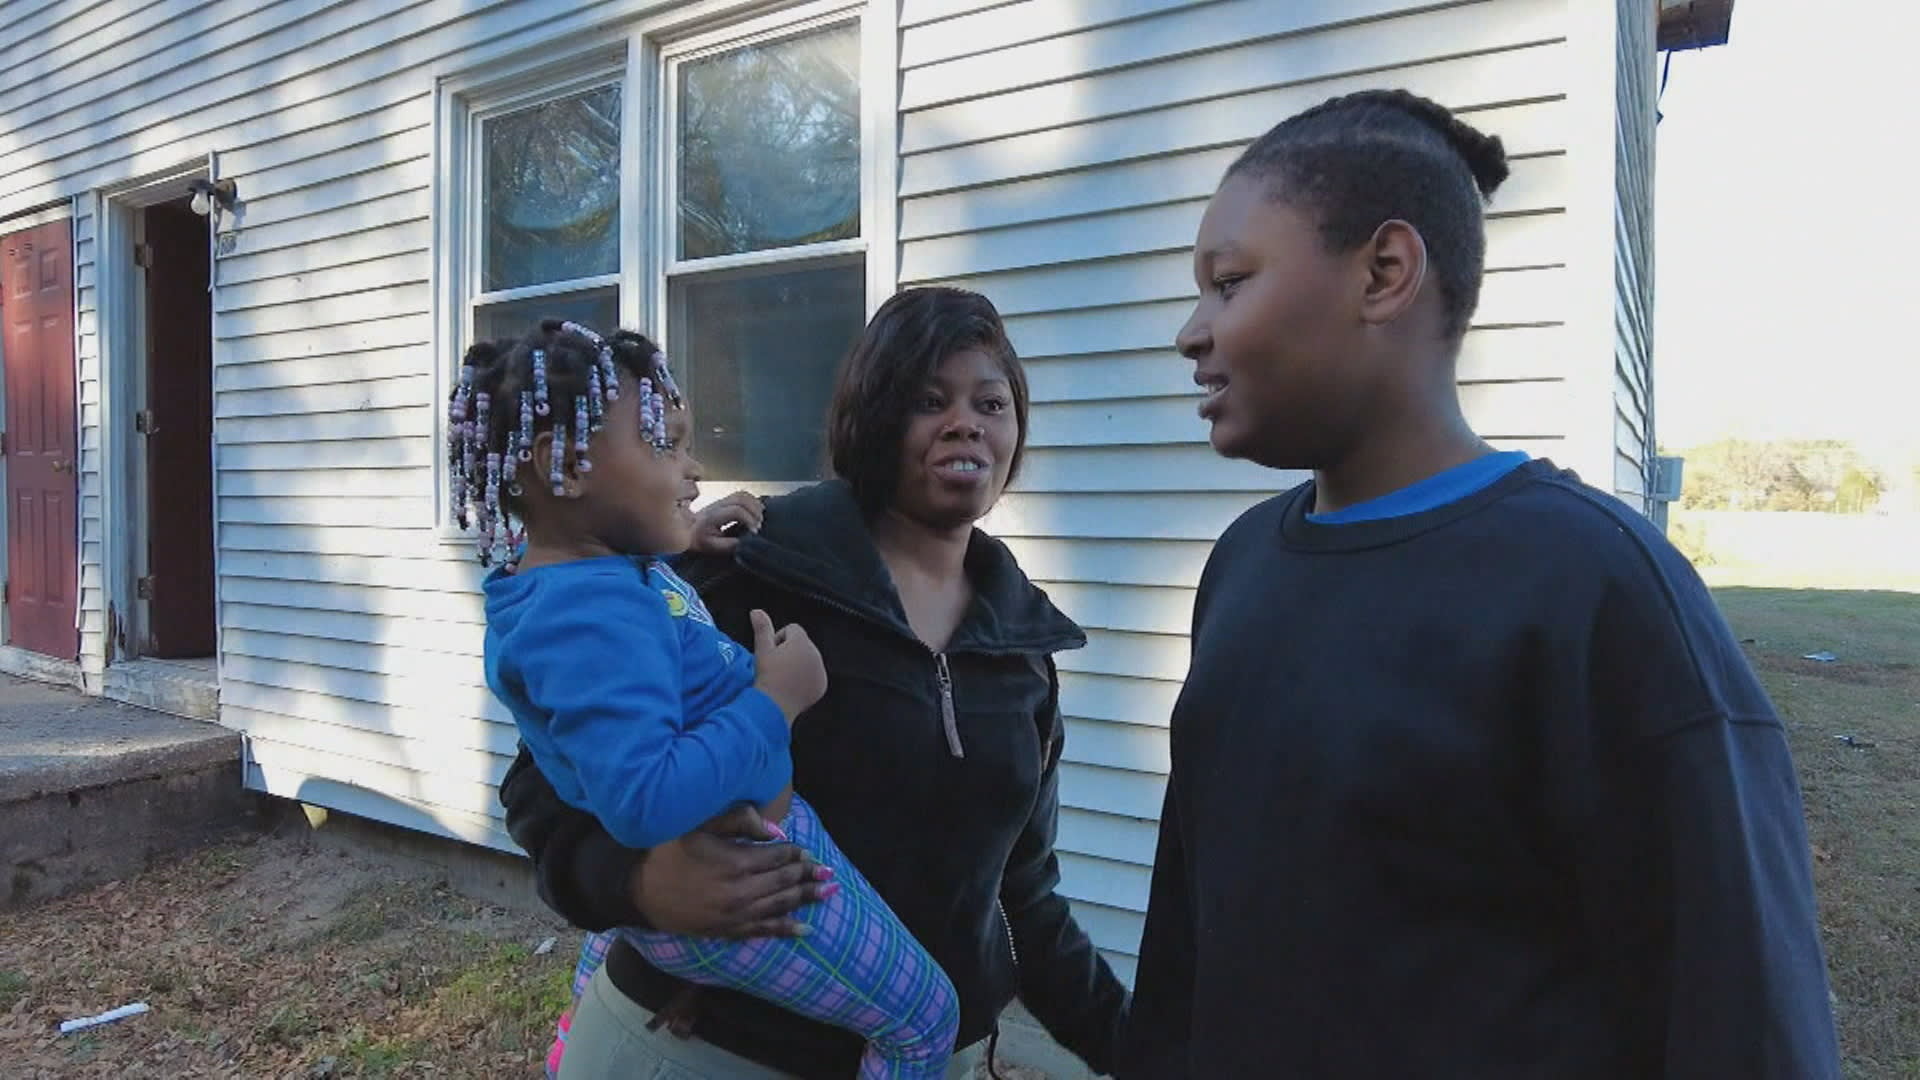 Chlapec z Marylandu zachránil dvouletou sestru z hořícího domu.